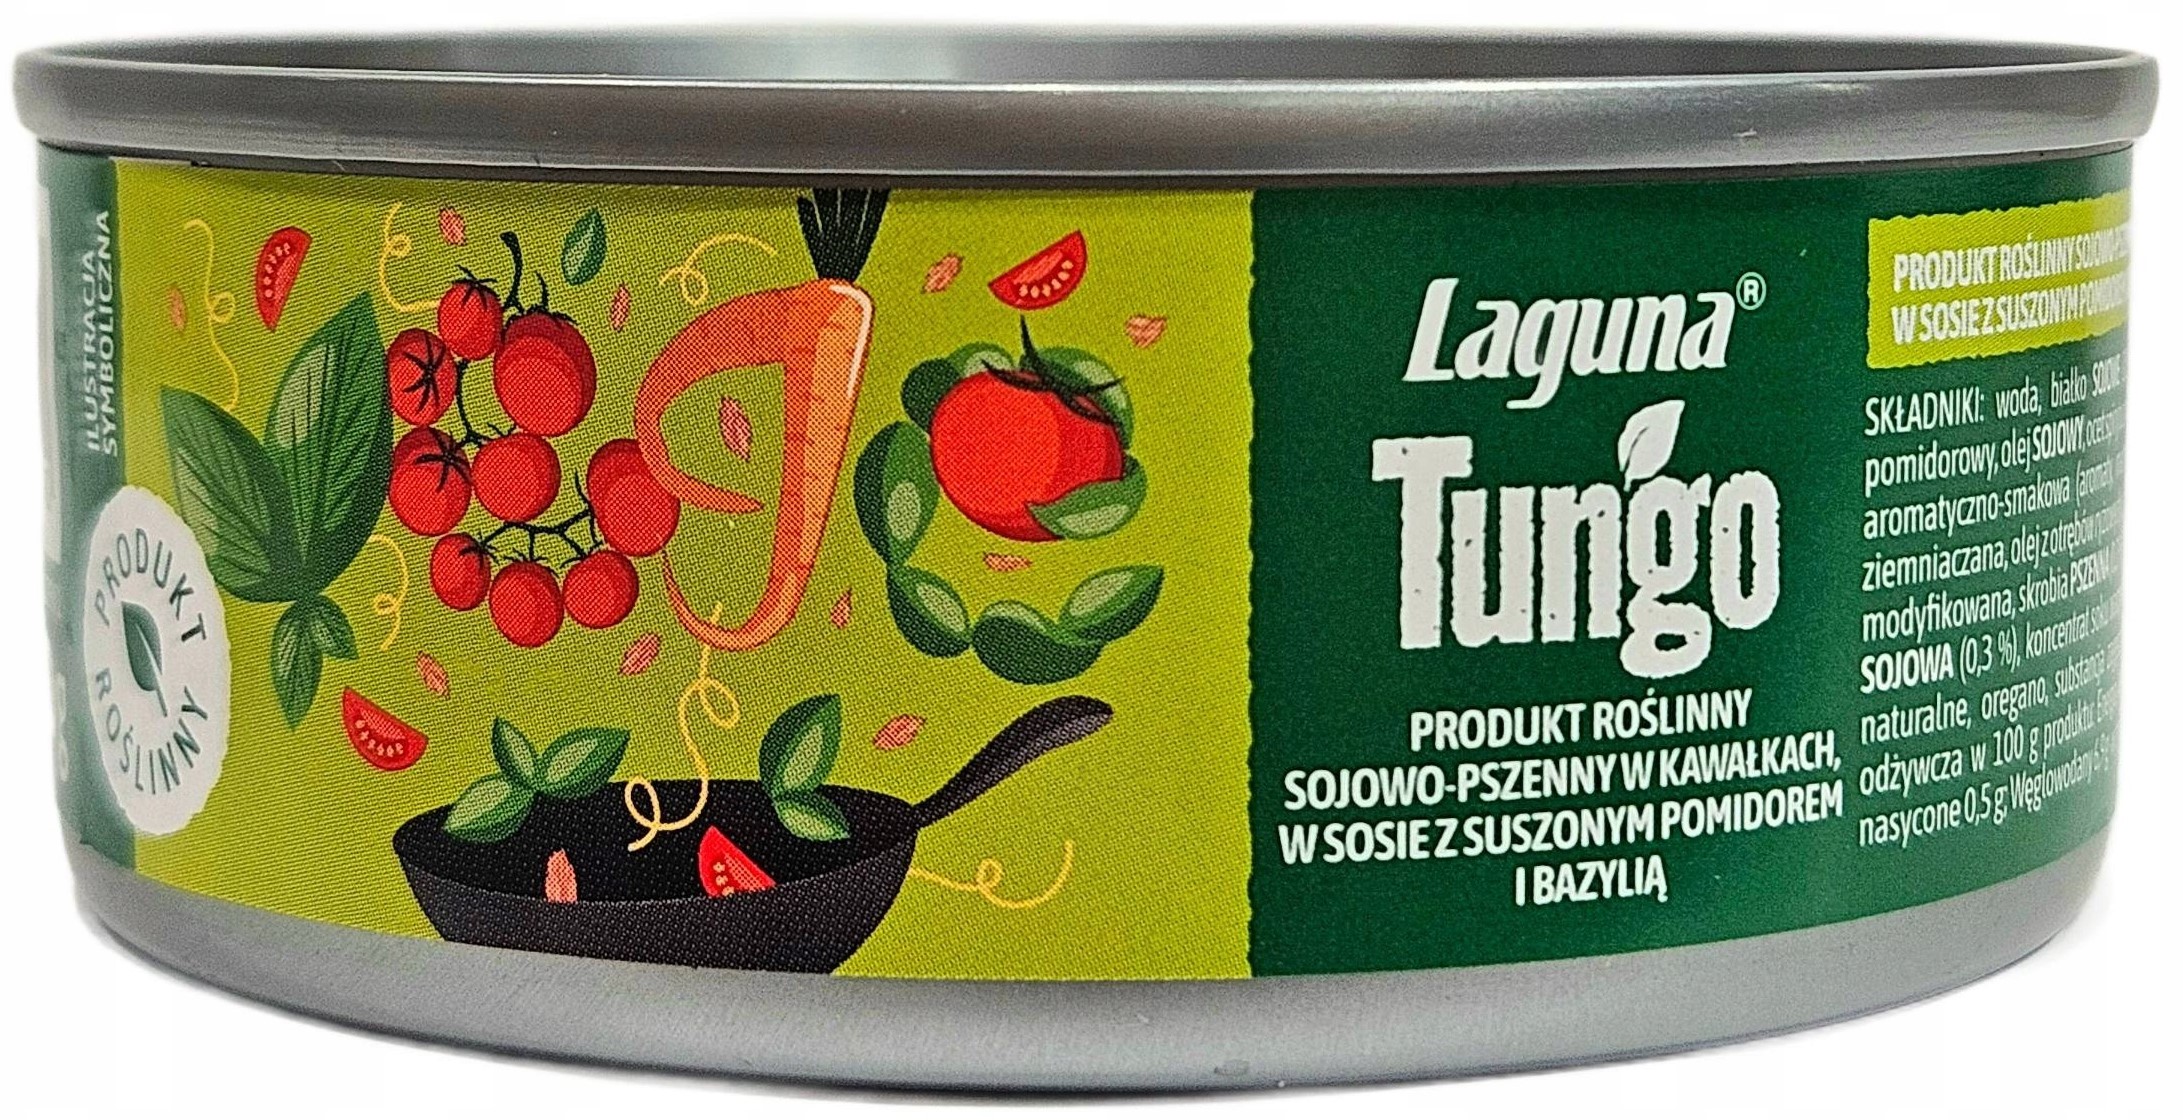 Laguna Tungo Produkt roślinny  sojowo-pszenny w kawałkach w sosie z suszonym pomidorem i bazylią